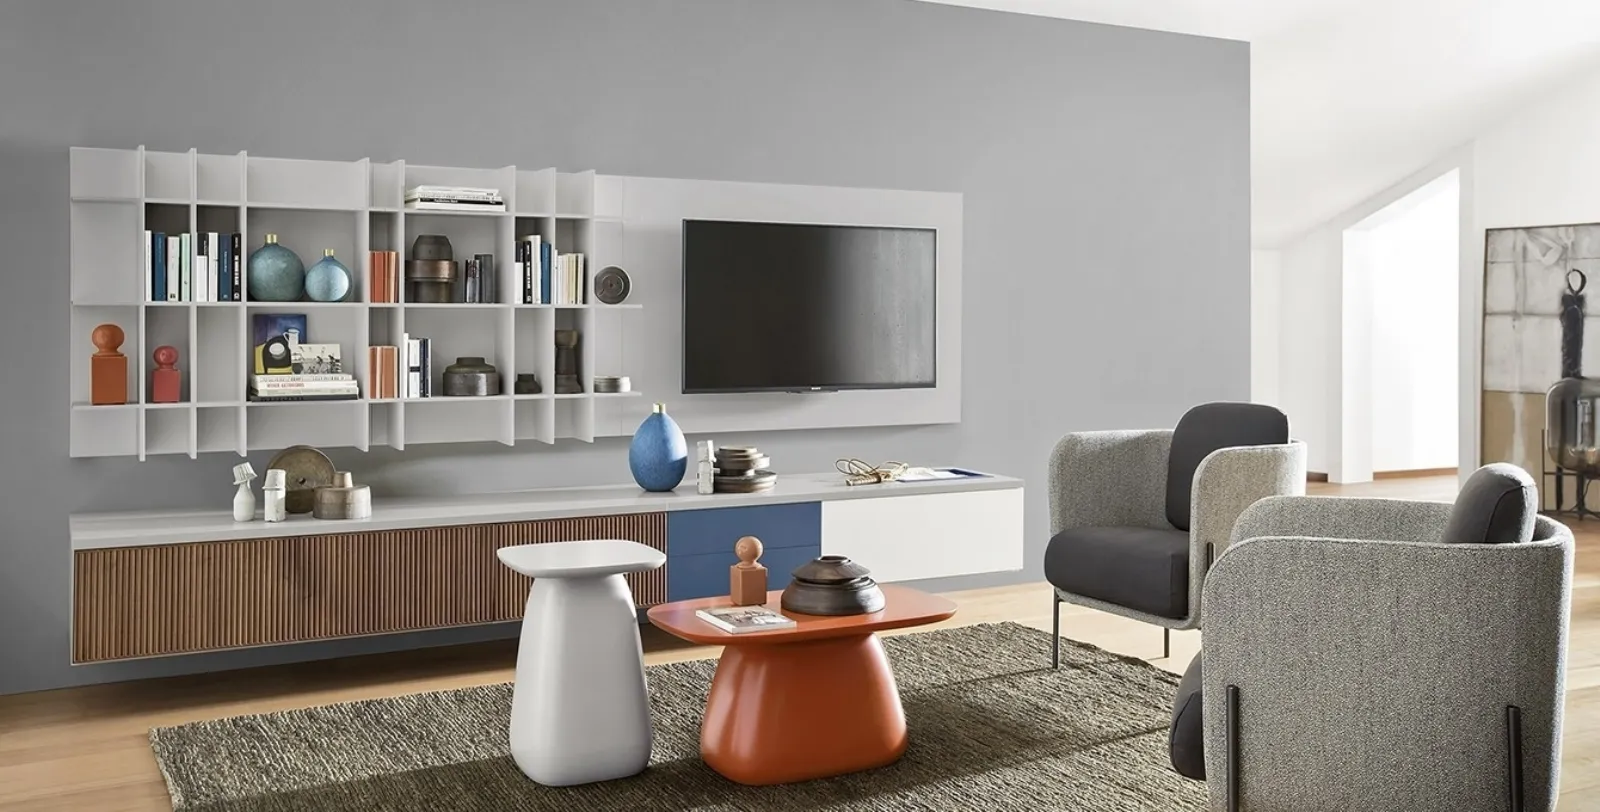 Arredo soggiorno moderno idee e consigli mobili soggiorno for Arredamento soggiorno immagini